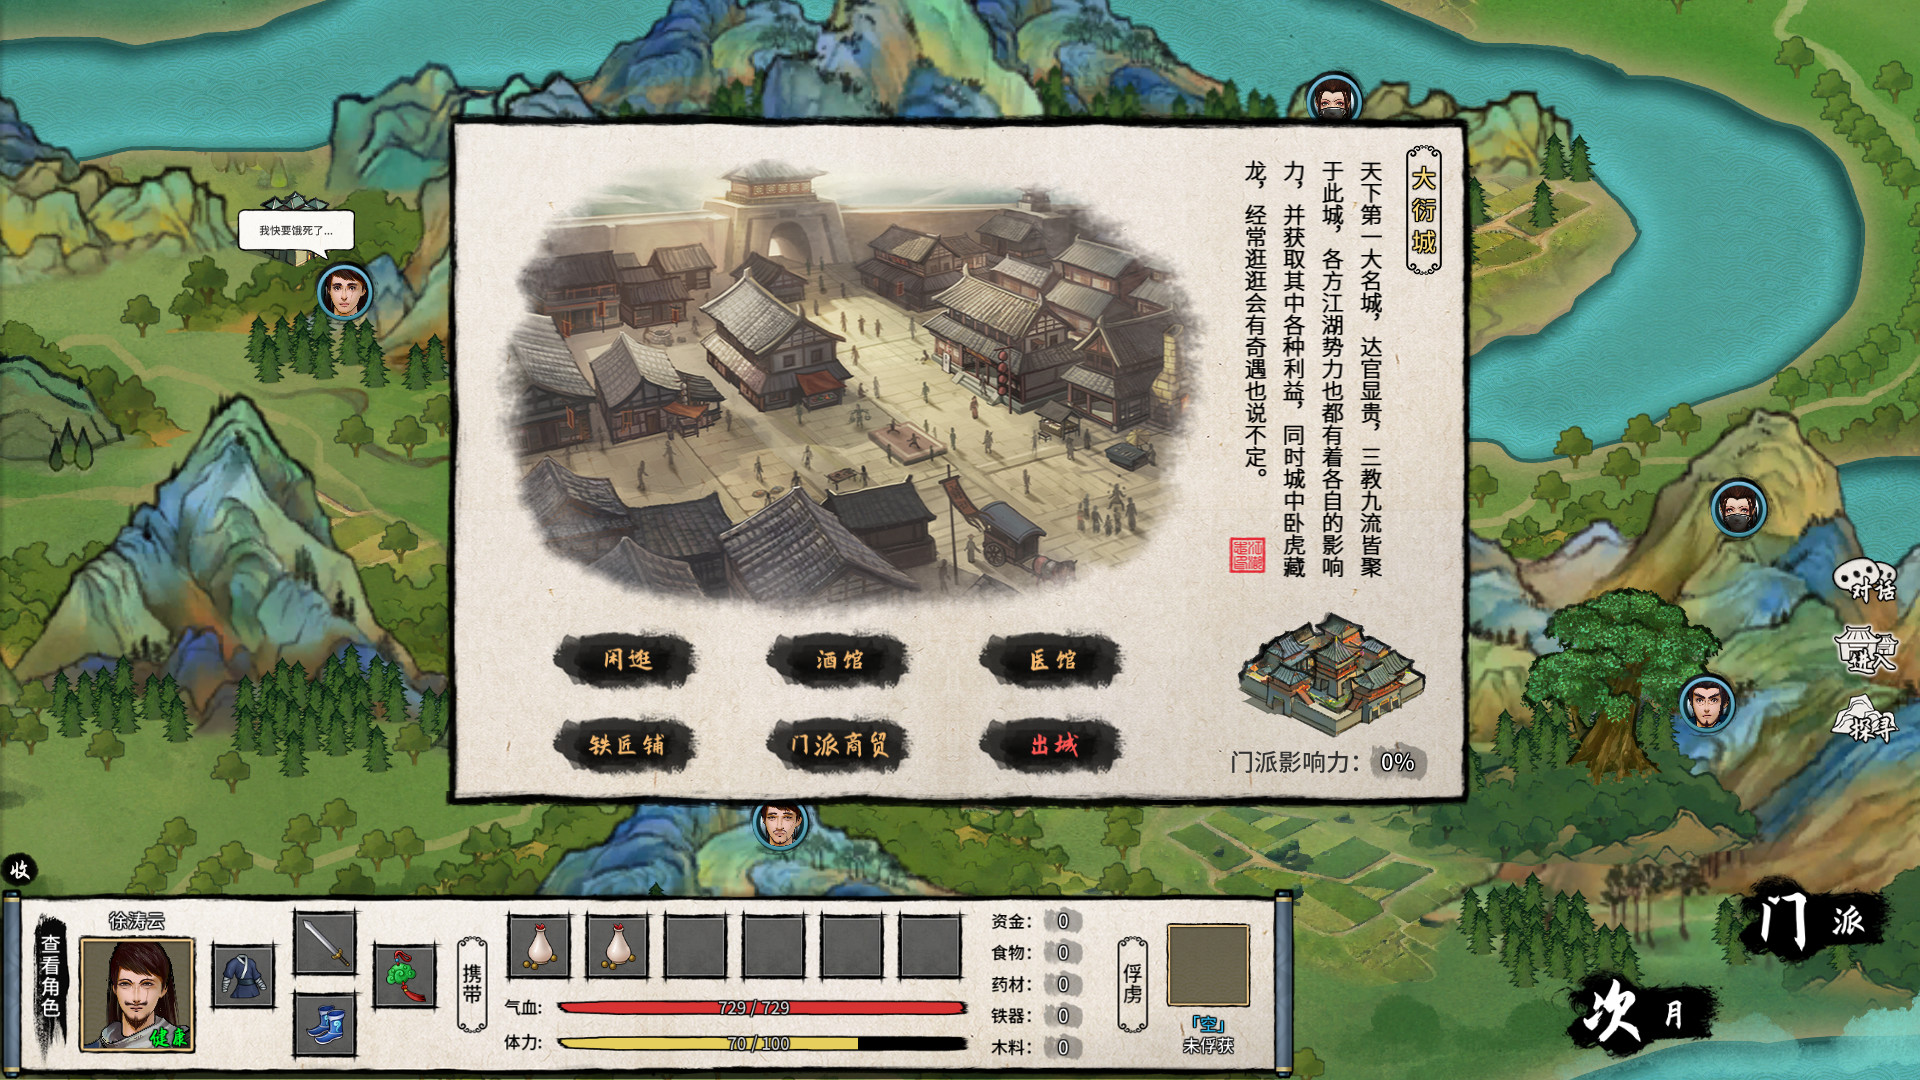 大衍江湖 - Evolution Of JiangHu screenshot